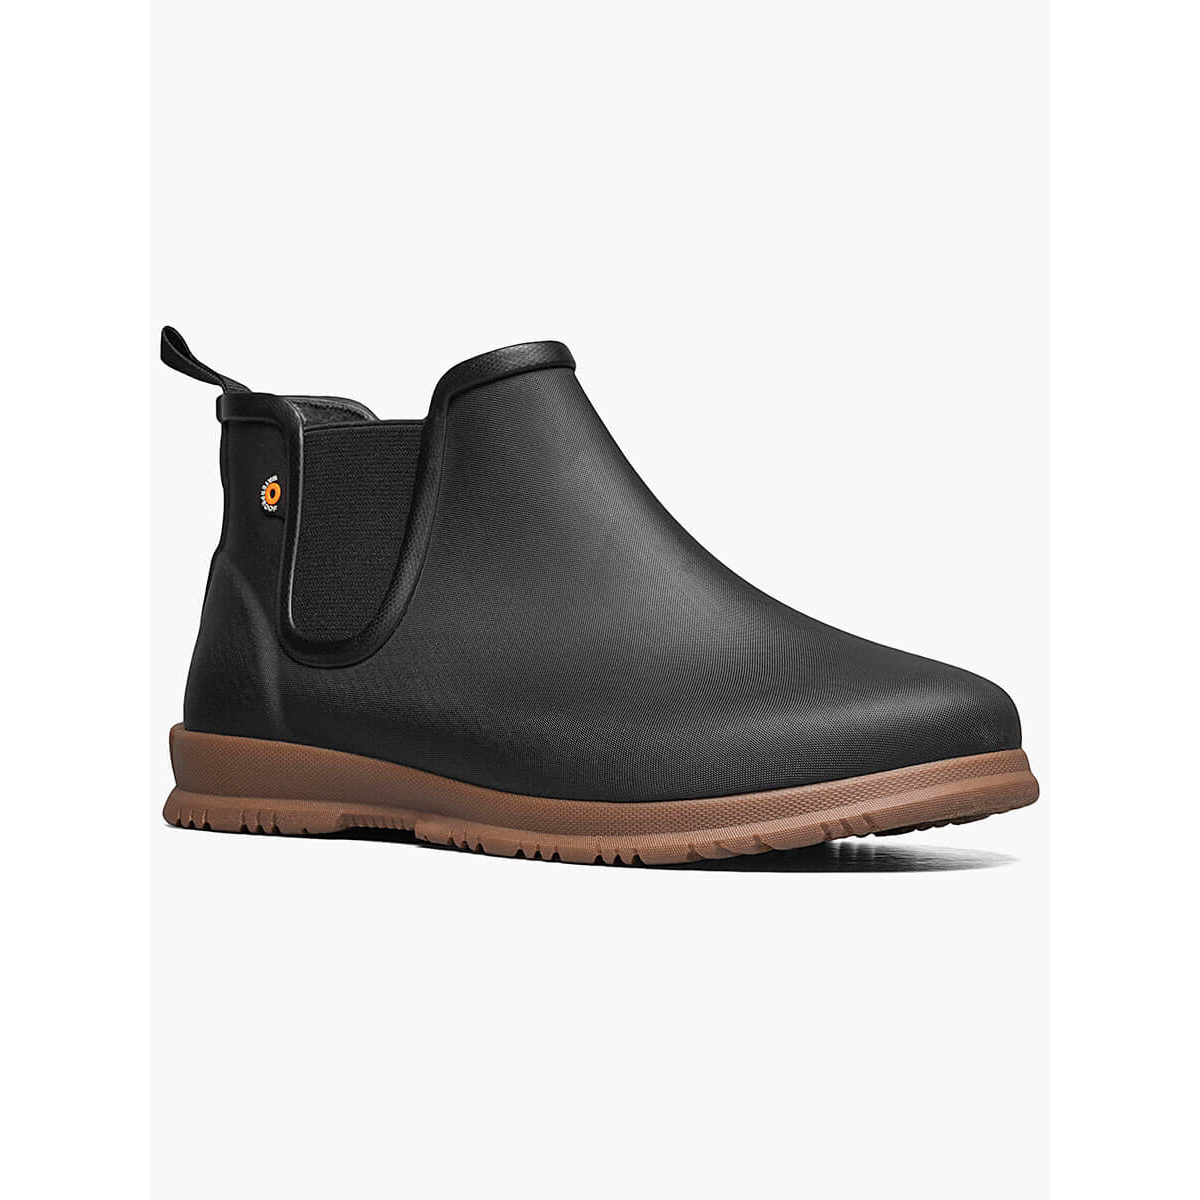 BOGS Women's Sweetpea Waterproof Slip On Rain Boots Black- 72198-001 - BLACK, 6-W